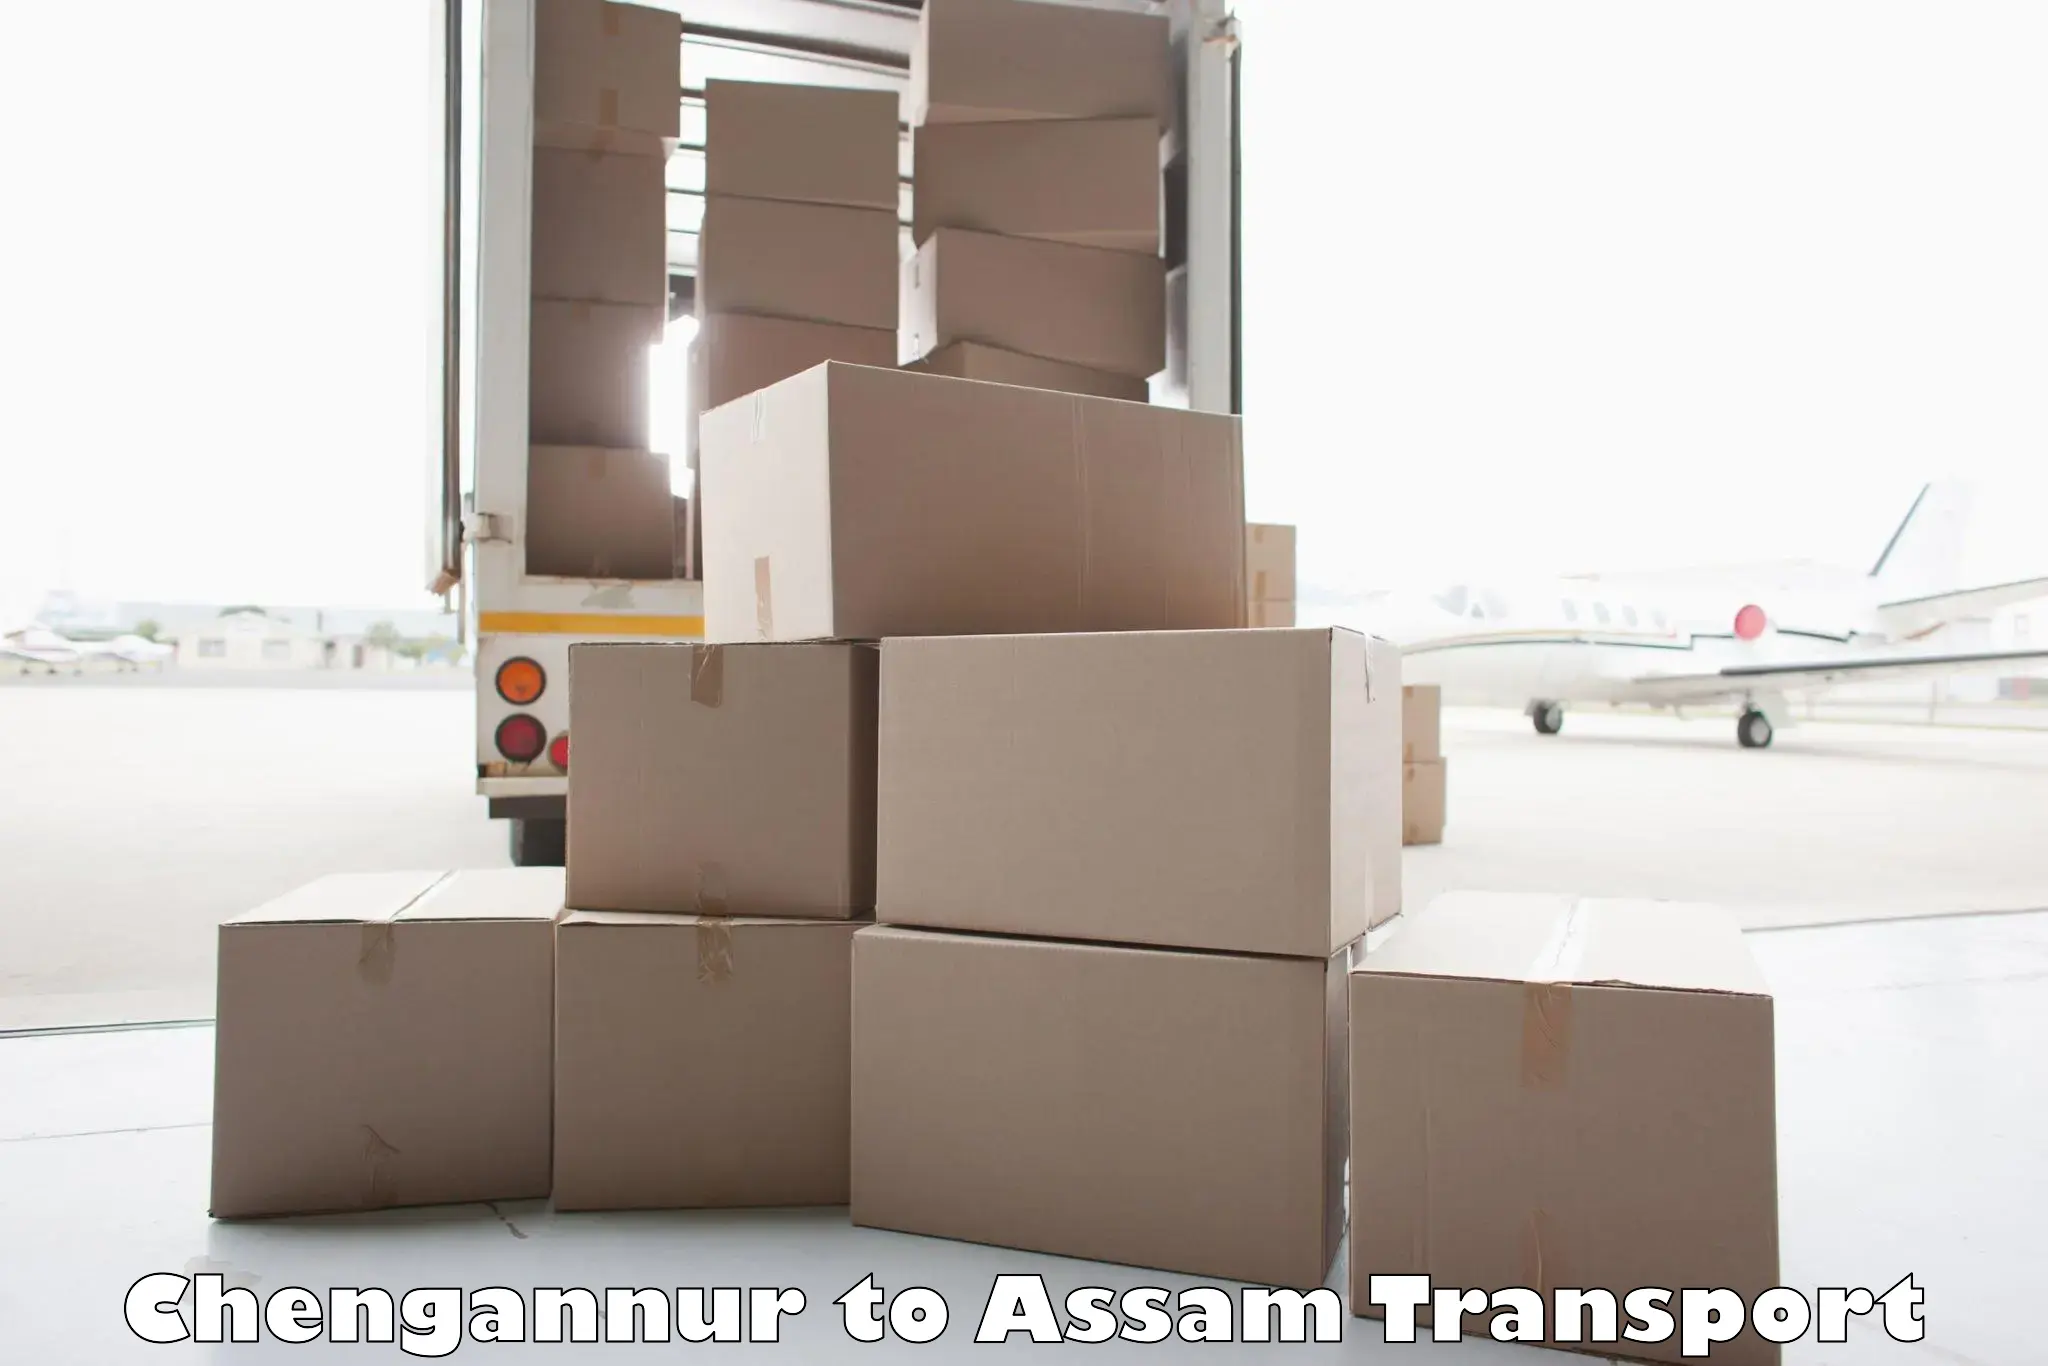 Door to door transport services Chengannur to Assam